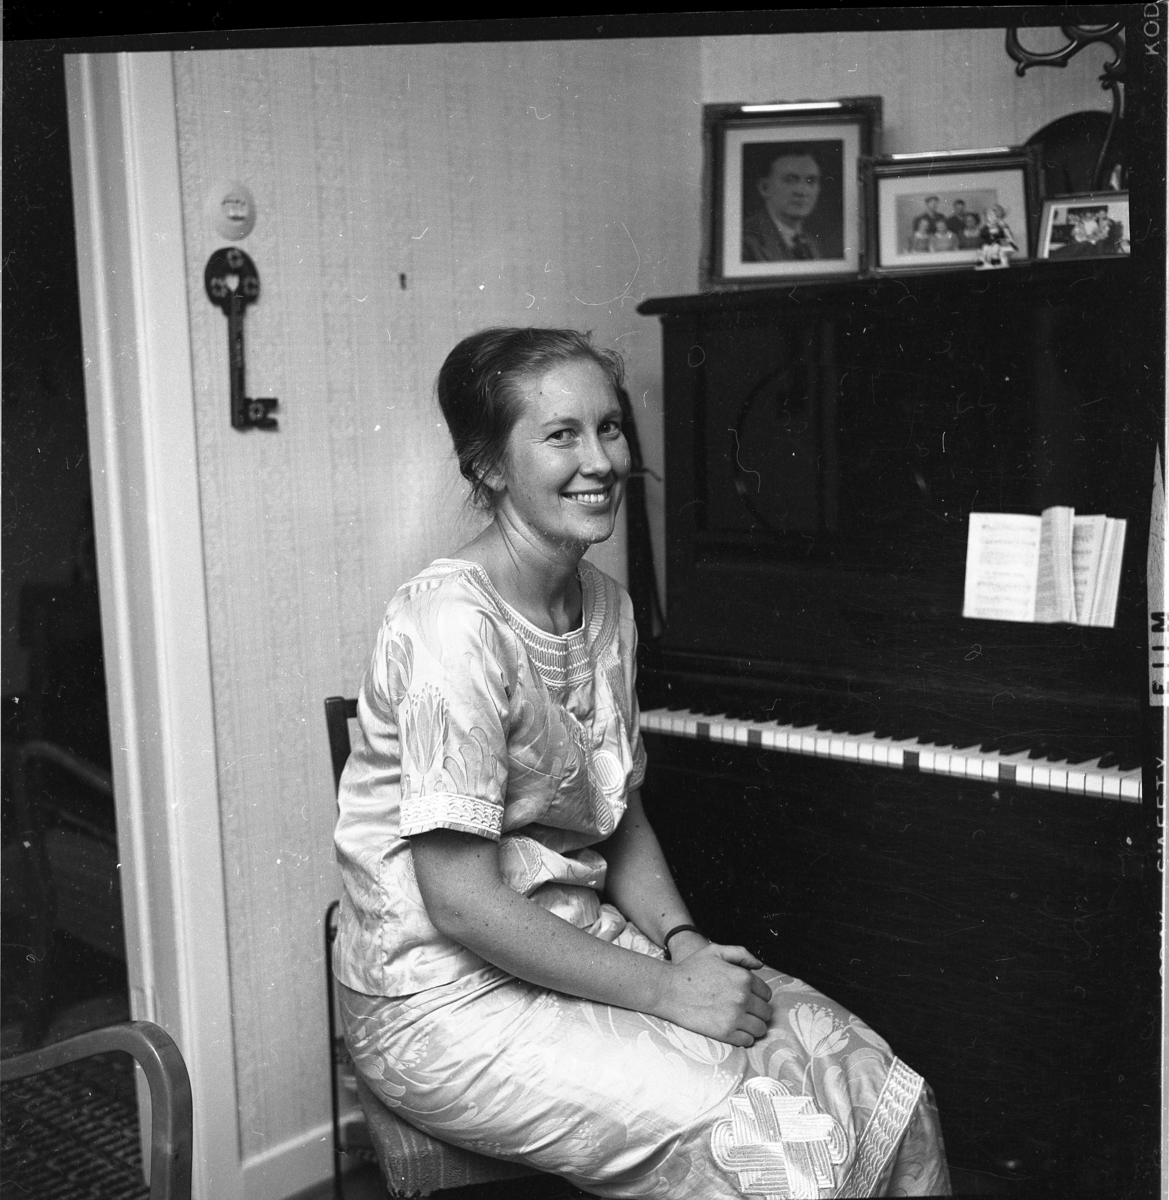 Marianne Boo sitter vid ett piano iförd en liberiansk festdräkt, en mönstrad klänning. På pianot står fotografier och på väggen till vänster hänger en stor nyckel.